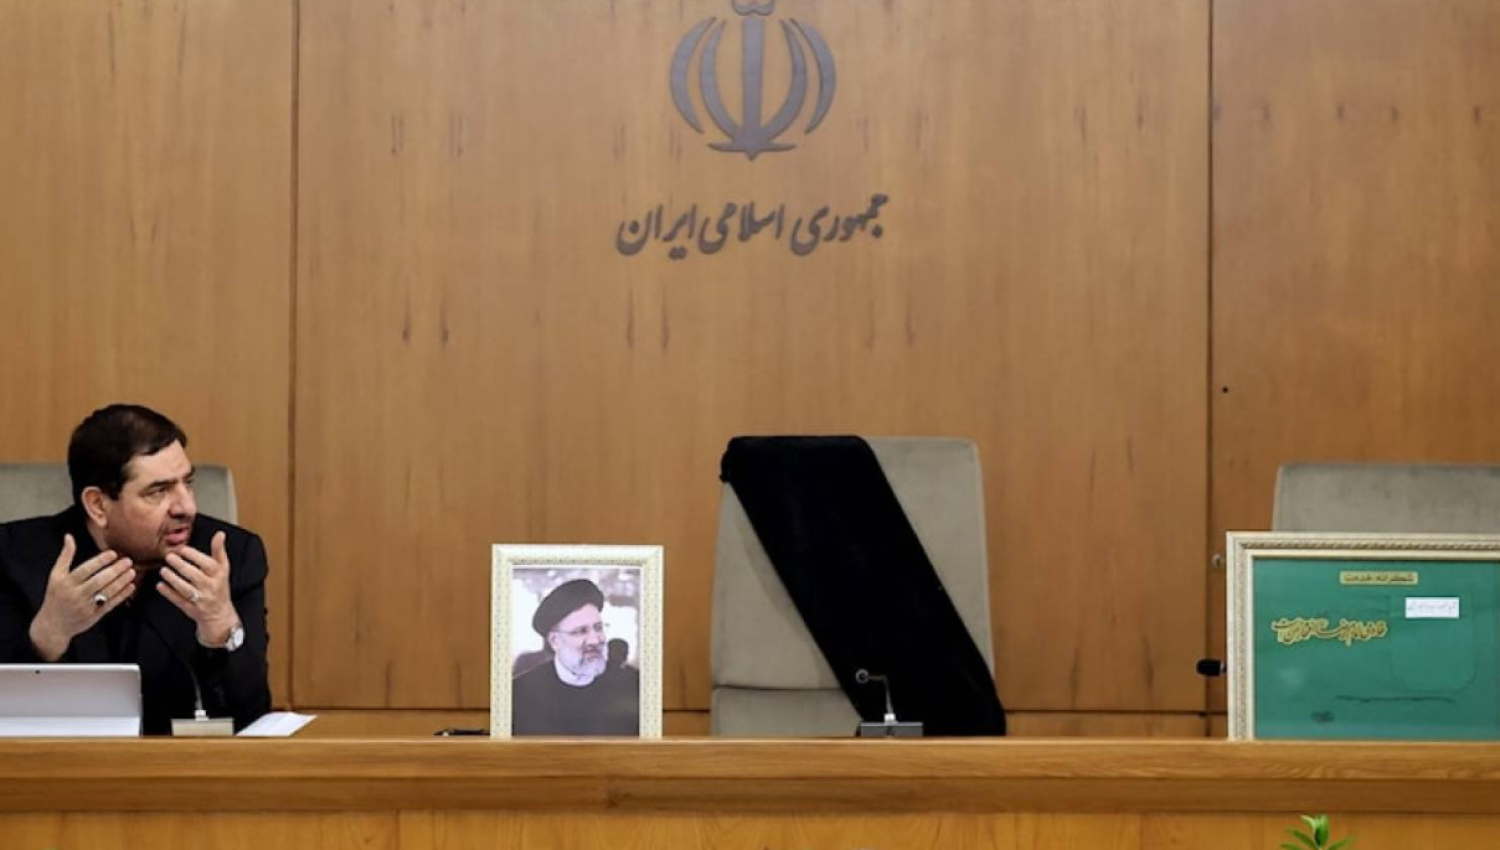 כיצד ינהל המשטר האיראני את שלב המעבר?